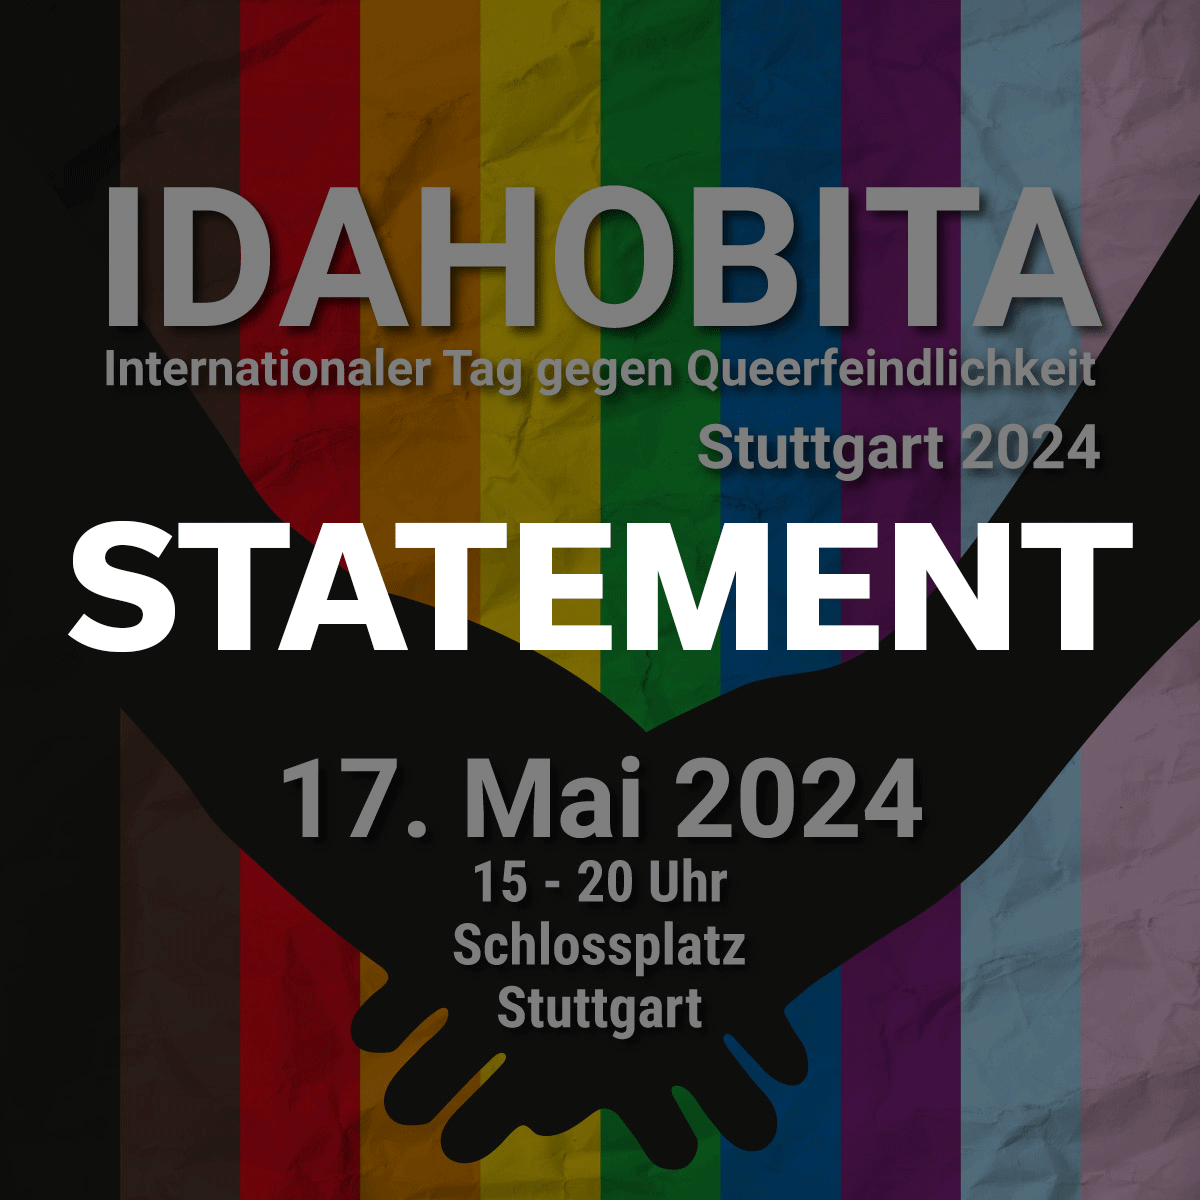 Statement zu IDAHOBITA Stuttgart 2024